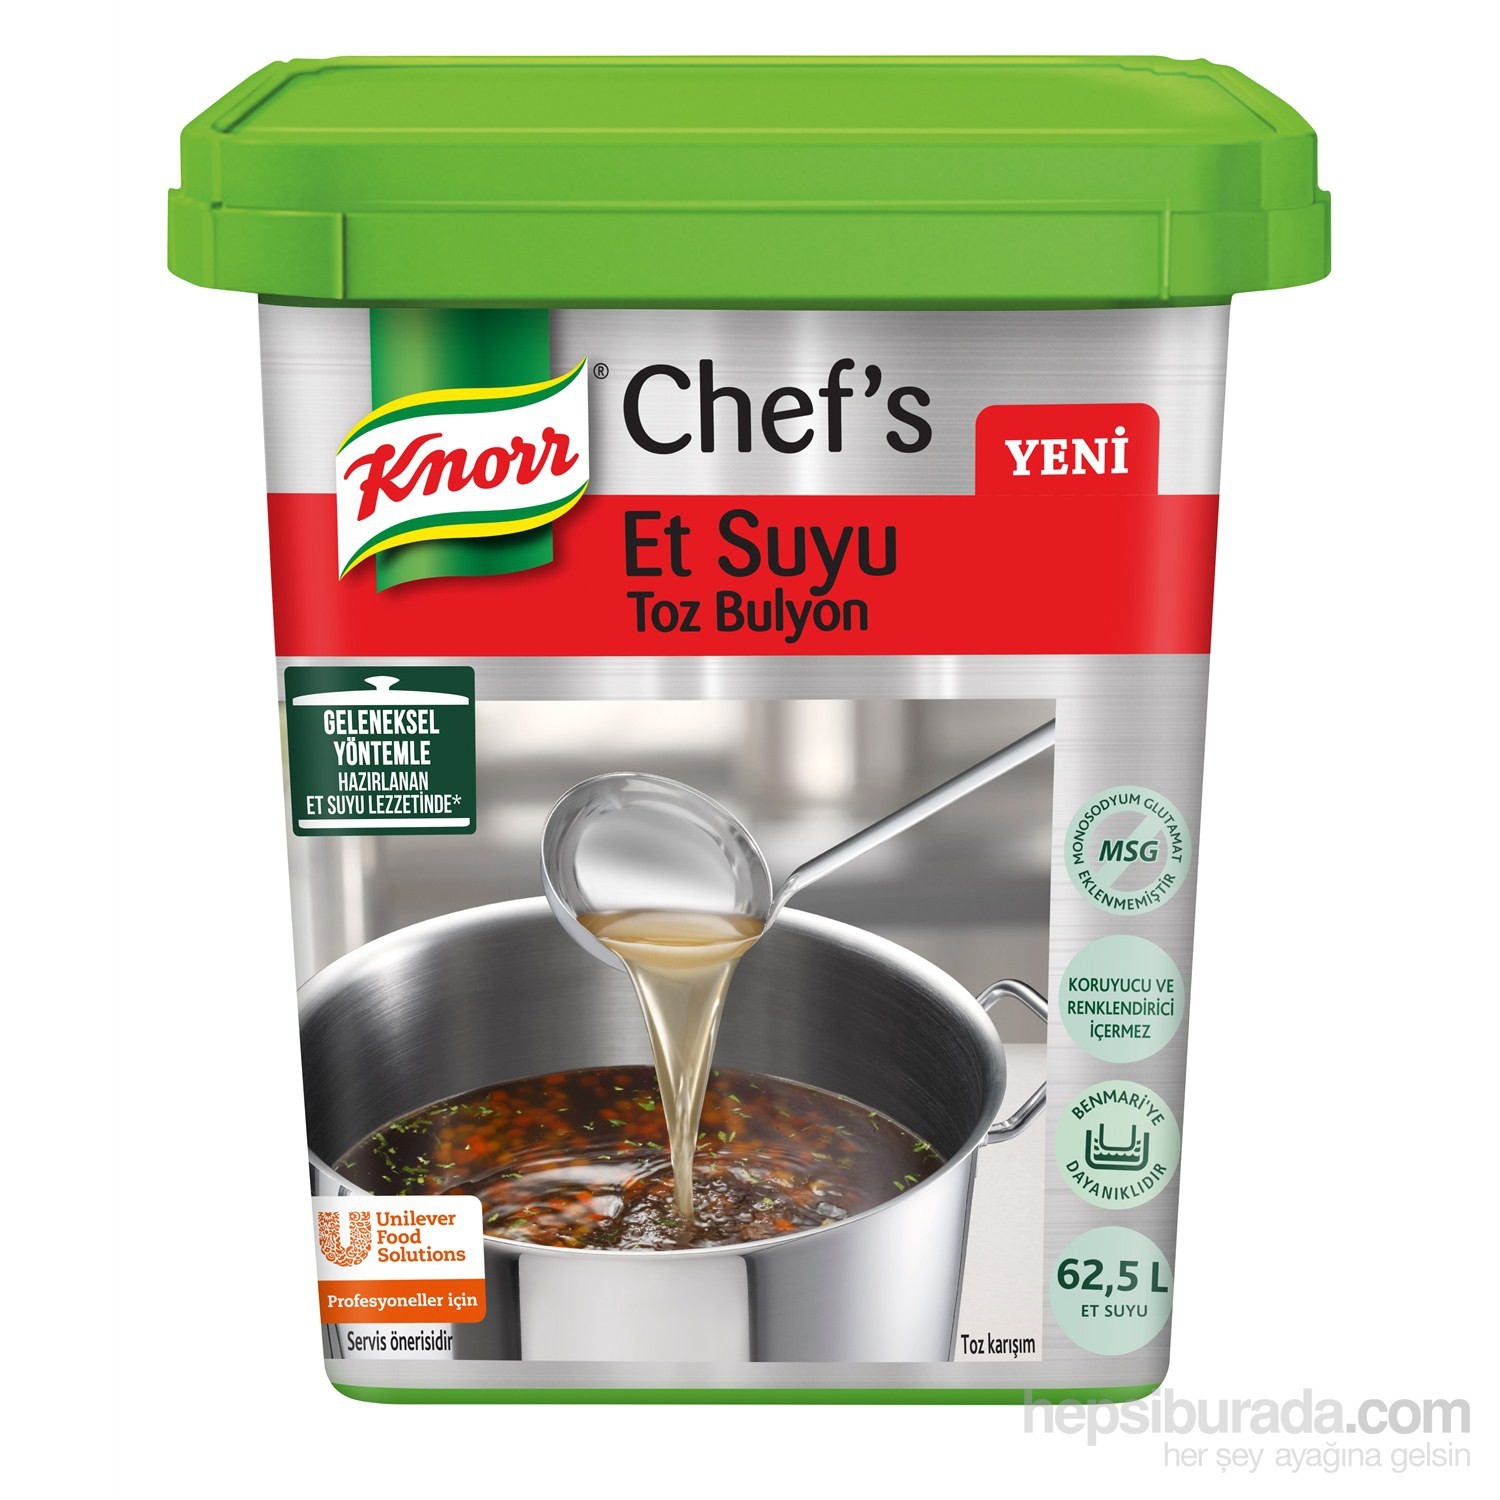 Knorr Chef’s Et Suyu Toz Bulyon 1250 gr Fiyatı Taksit Seçenekleri